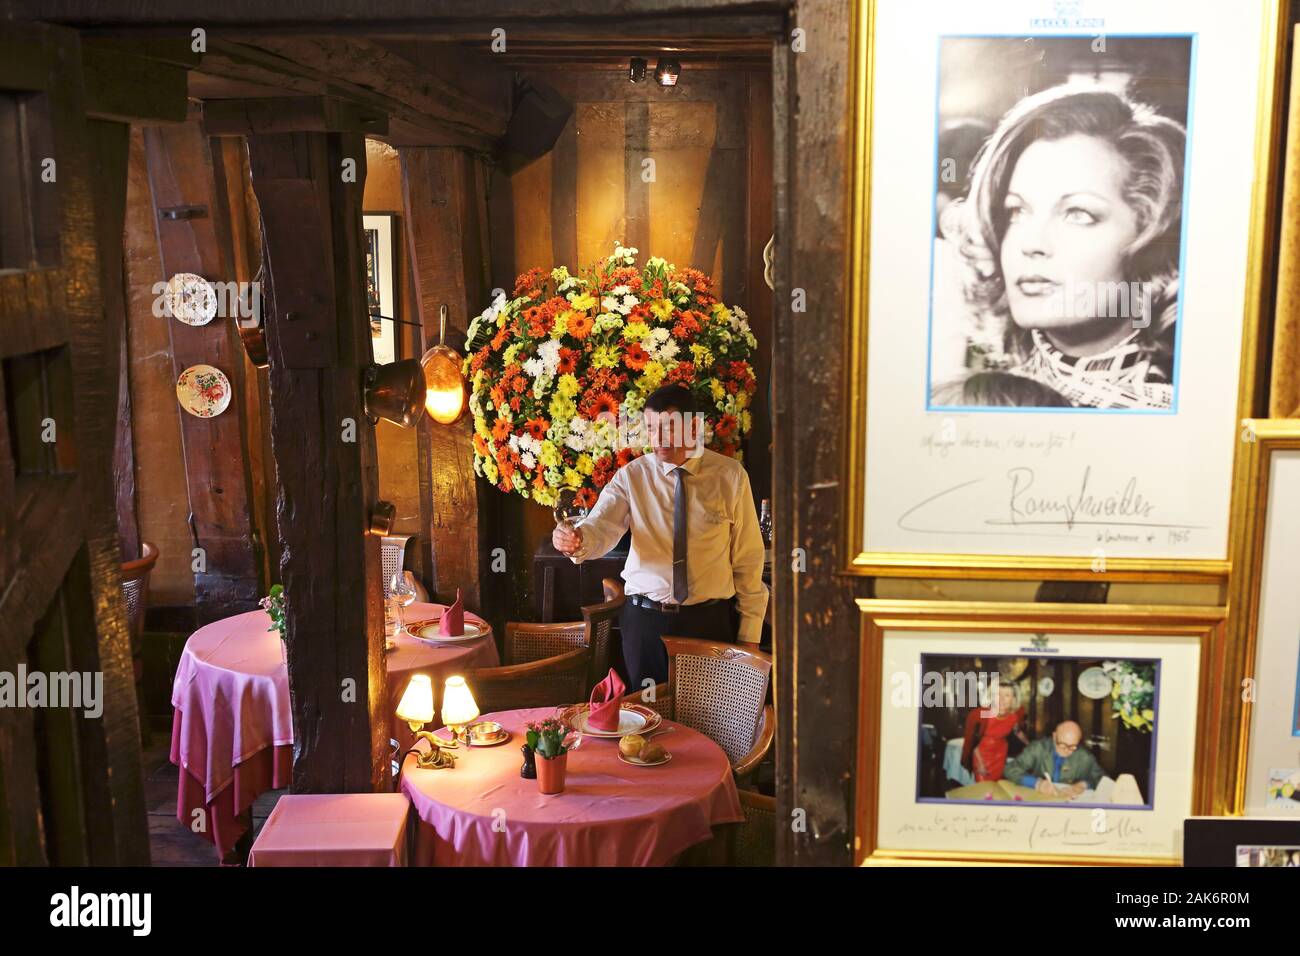 Rouen: Gastraum und Bilder von Promis im Restaurant "La Couronne" am Place du Marche, Normandie | Verwendung weltweit Stockfoto